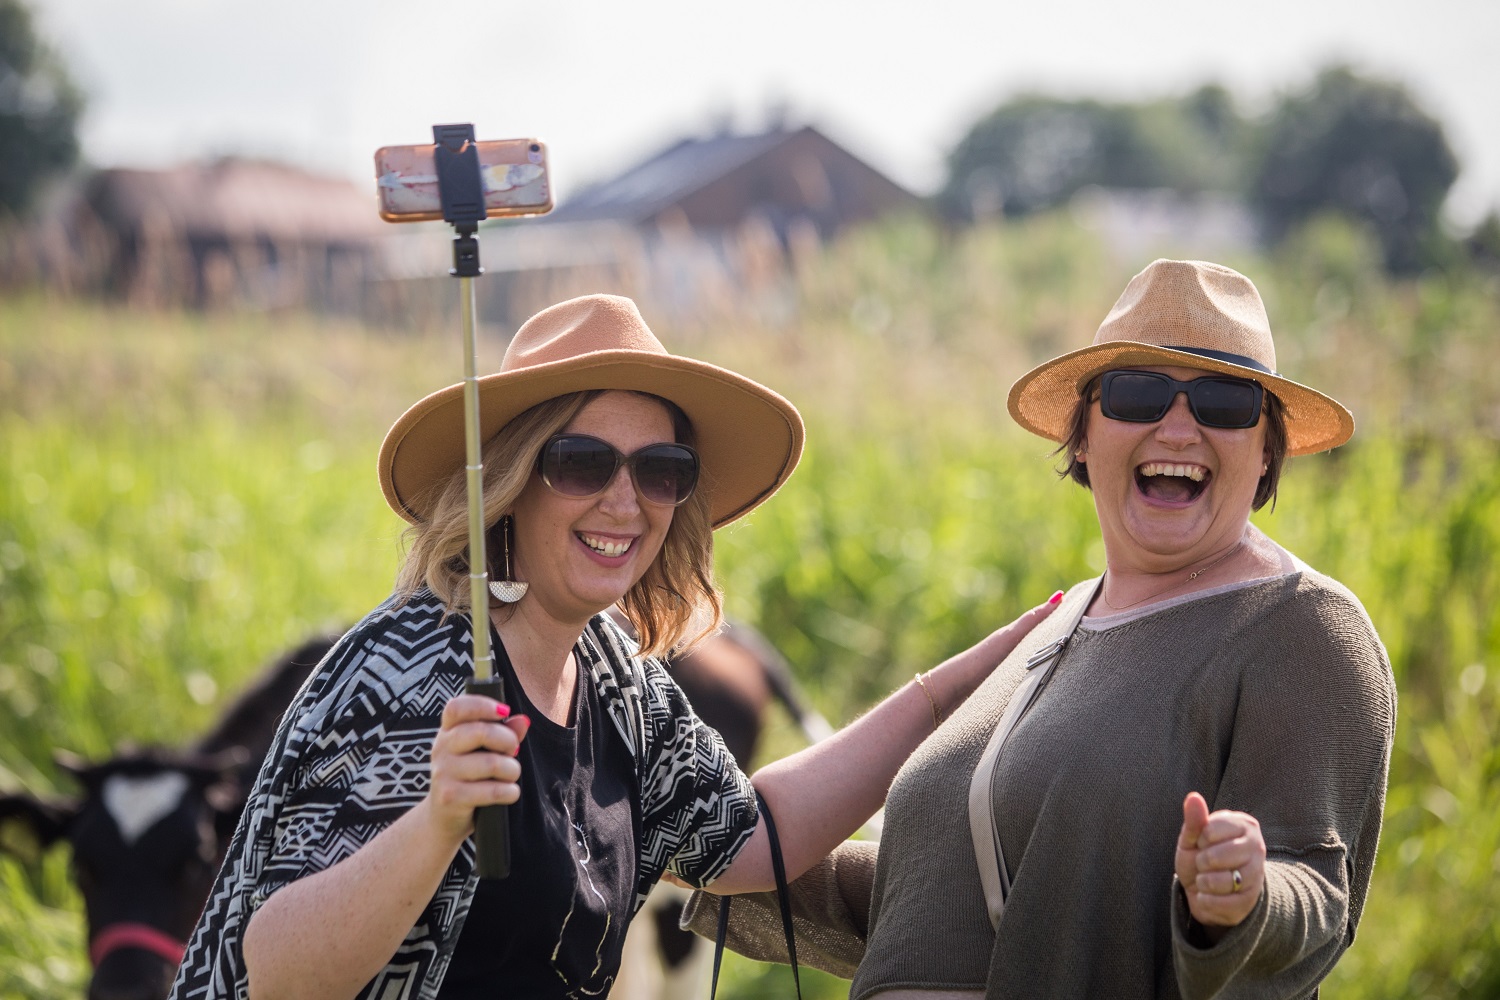 Dwie kobiety w ciemnych okularach i jasnych kapeluszach, robią selfie. Bardzo roześmiane. W tle łąka i zabudowania wiejskie.